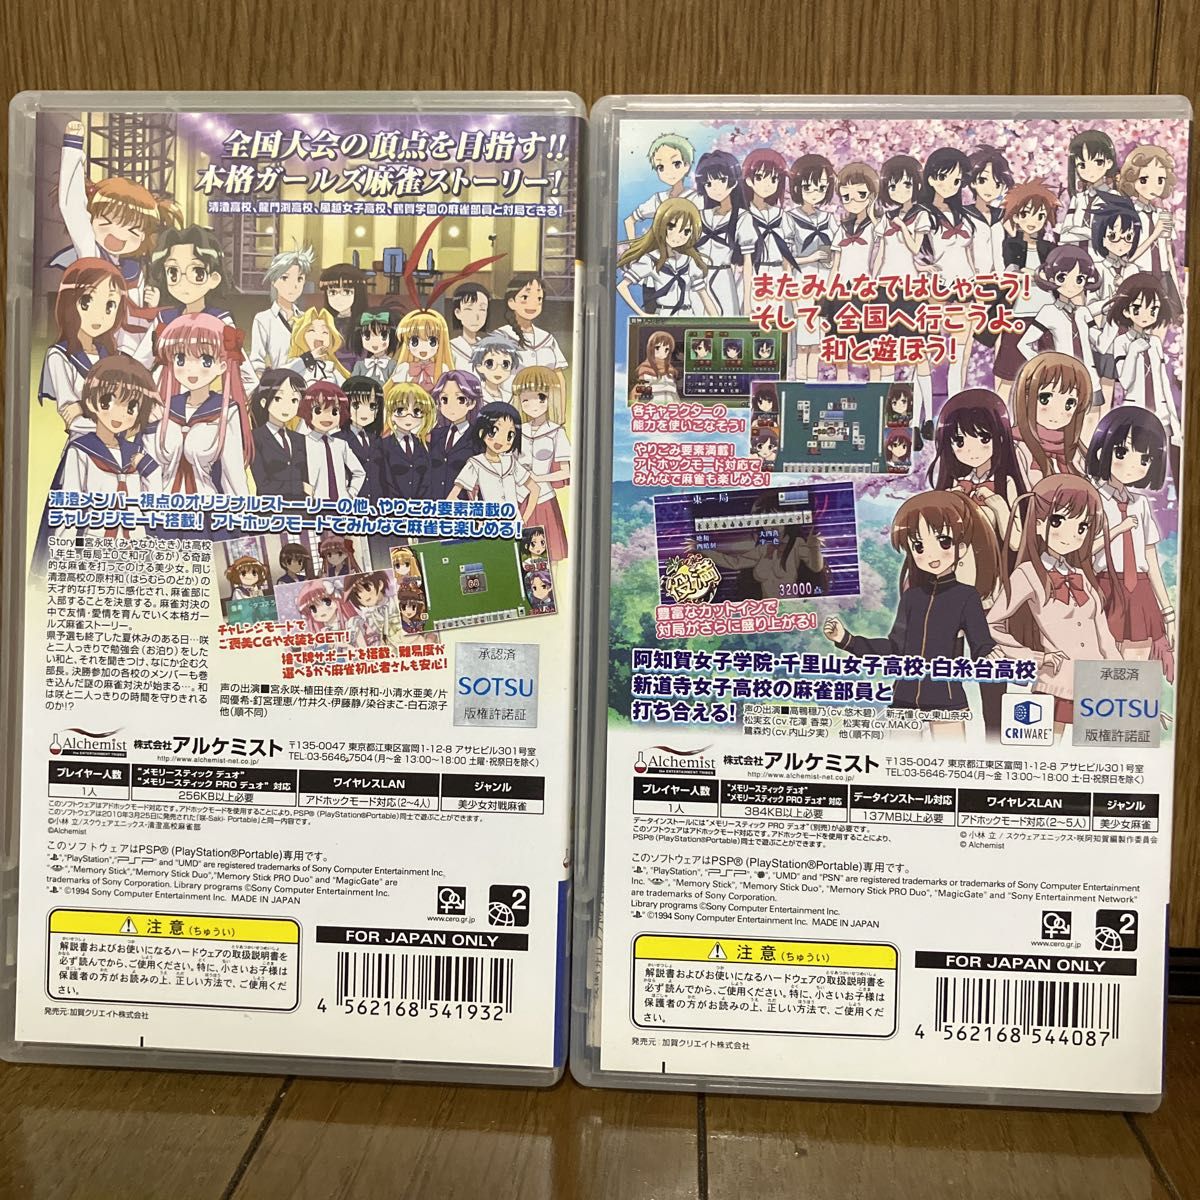 2本セット PSP 咲-saki- 無印/阿知賀編 episode of side-A Portable